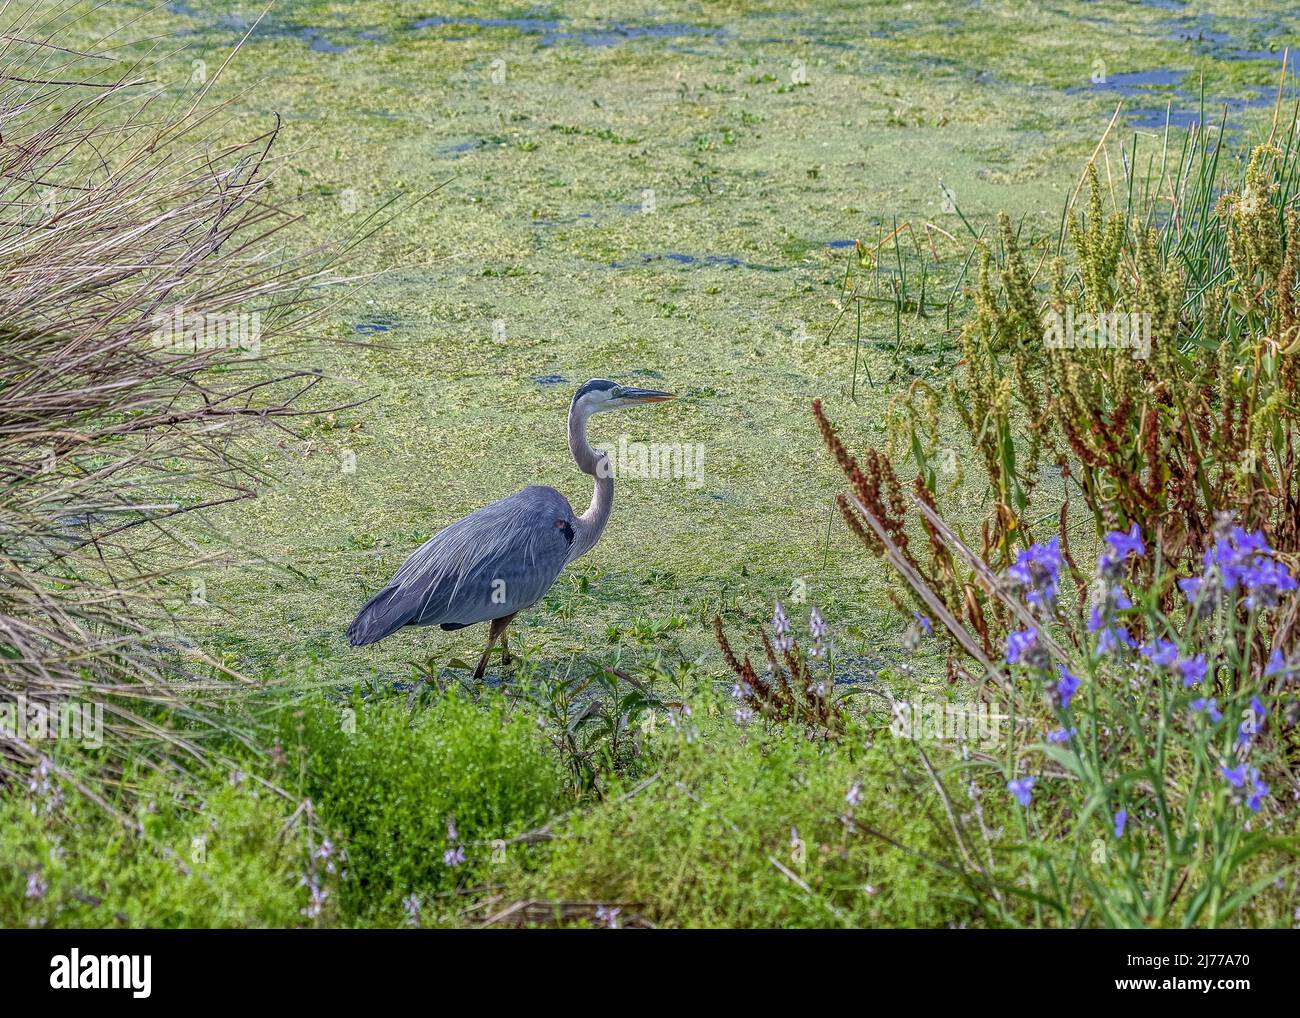 Grande airone blu che cammina attraverso le alghe acqua coperta vicino a fiori selvatici viola Foto Stock